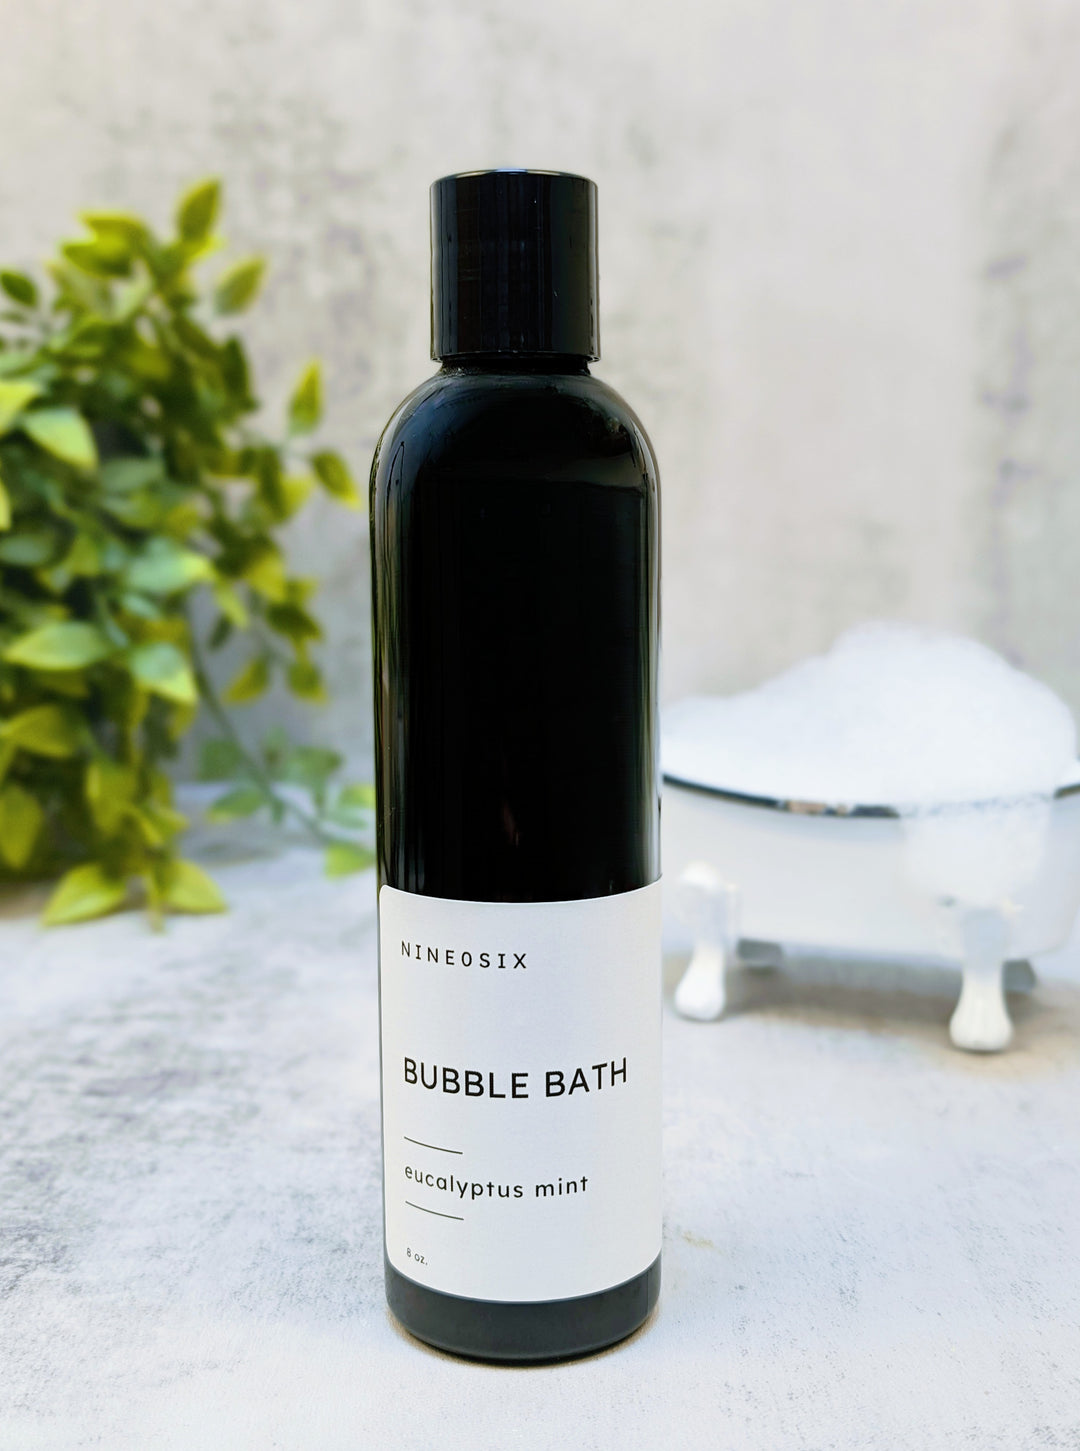 NINE0SIX Bubble Bath - Eucalyptus Mint